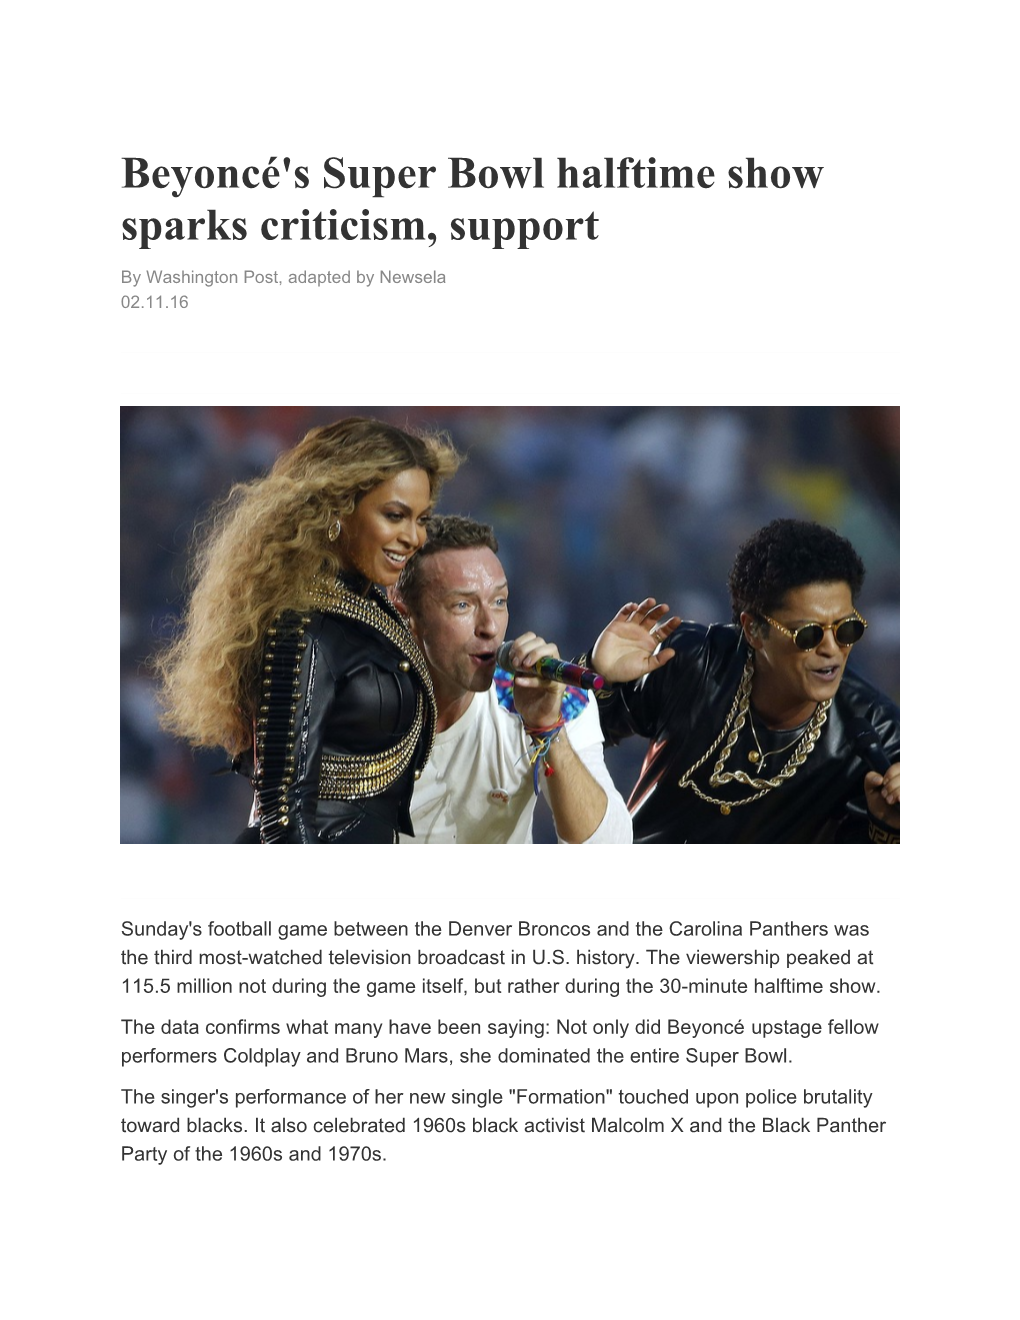 Beyoncé's Super Bowl Halftime Show Sparks Criticism, Support